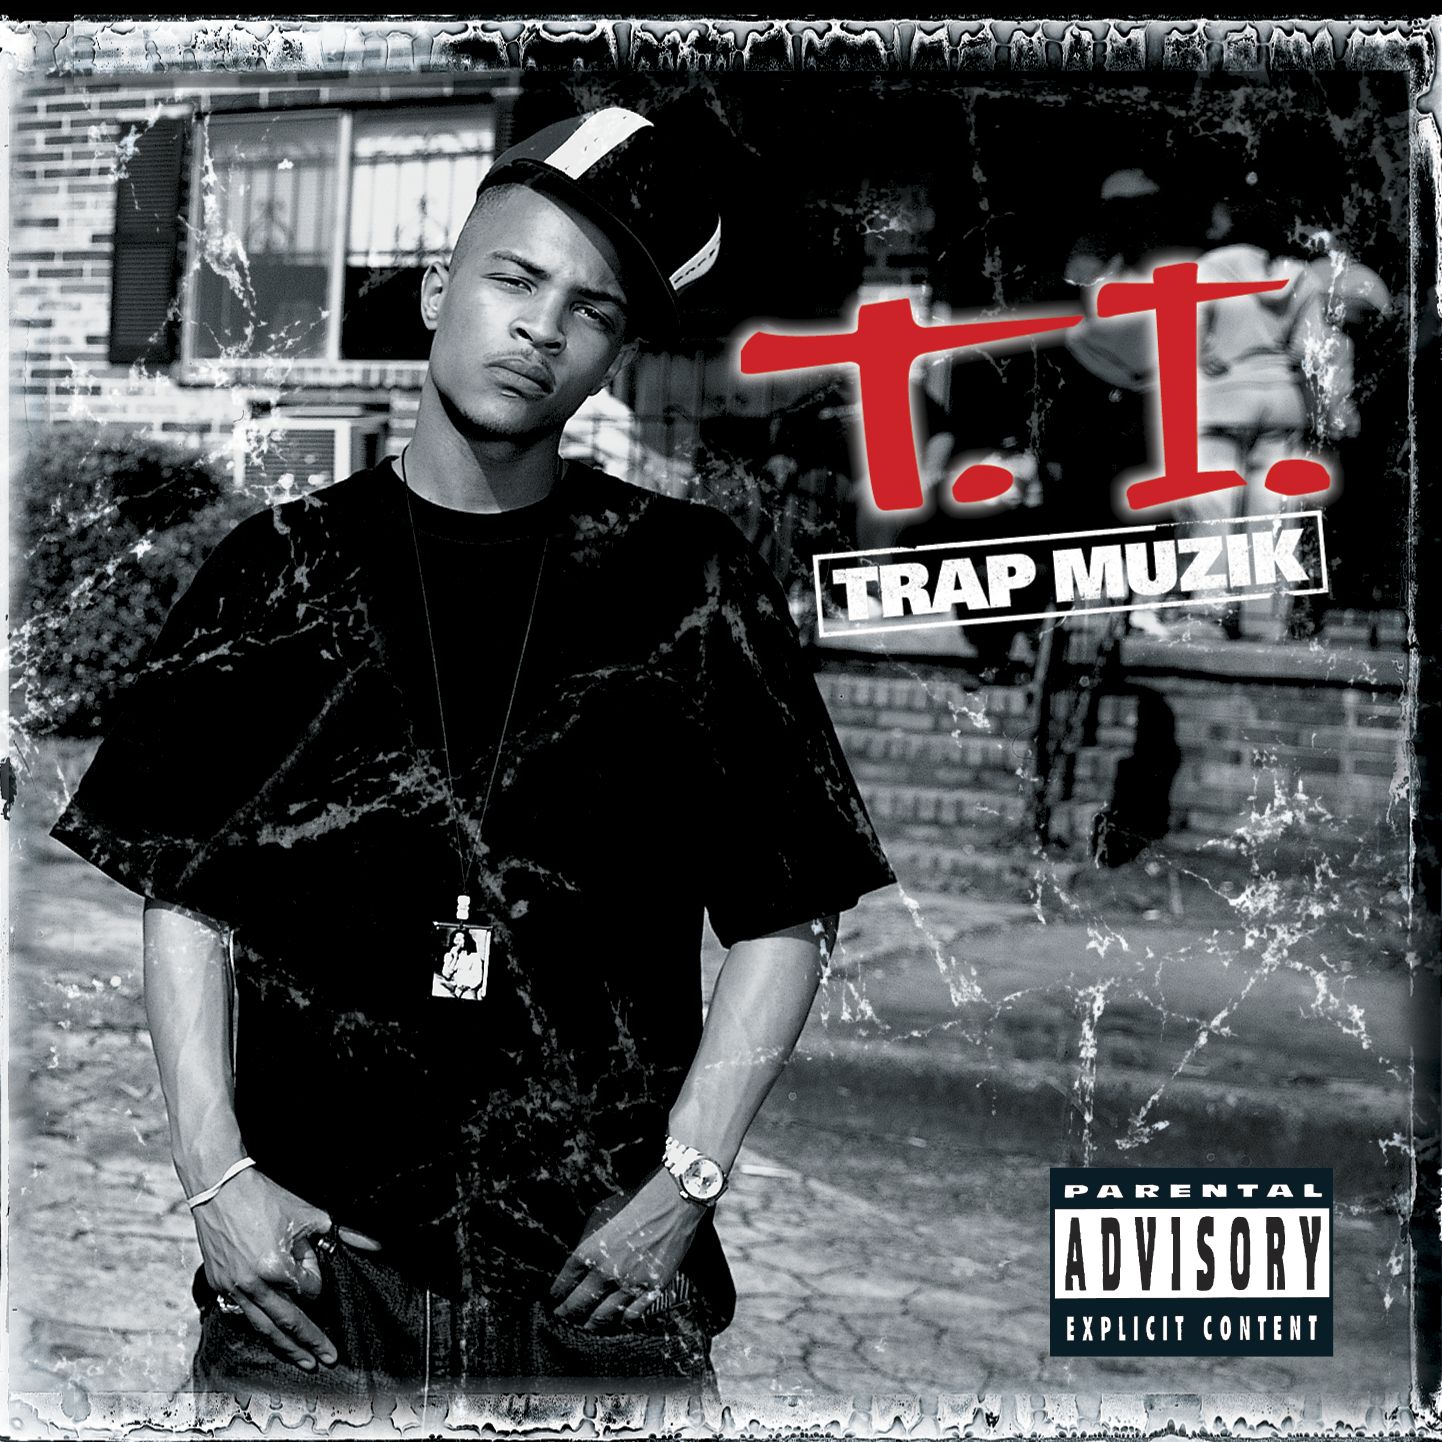 [T.I.] Trap Muzik (With images) Music albums, Hip hop music, Rap albums